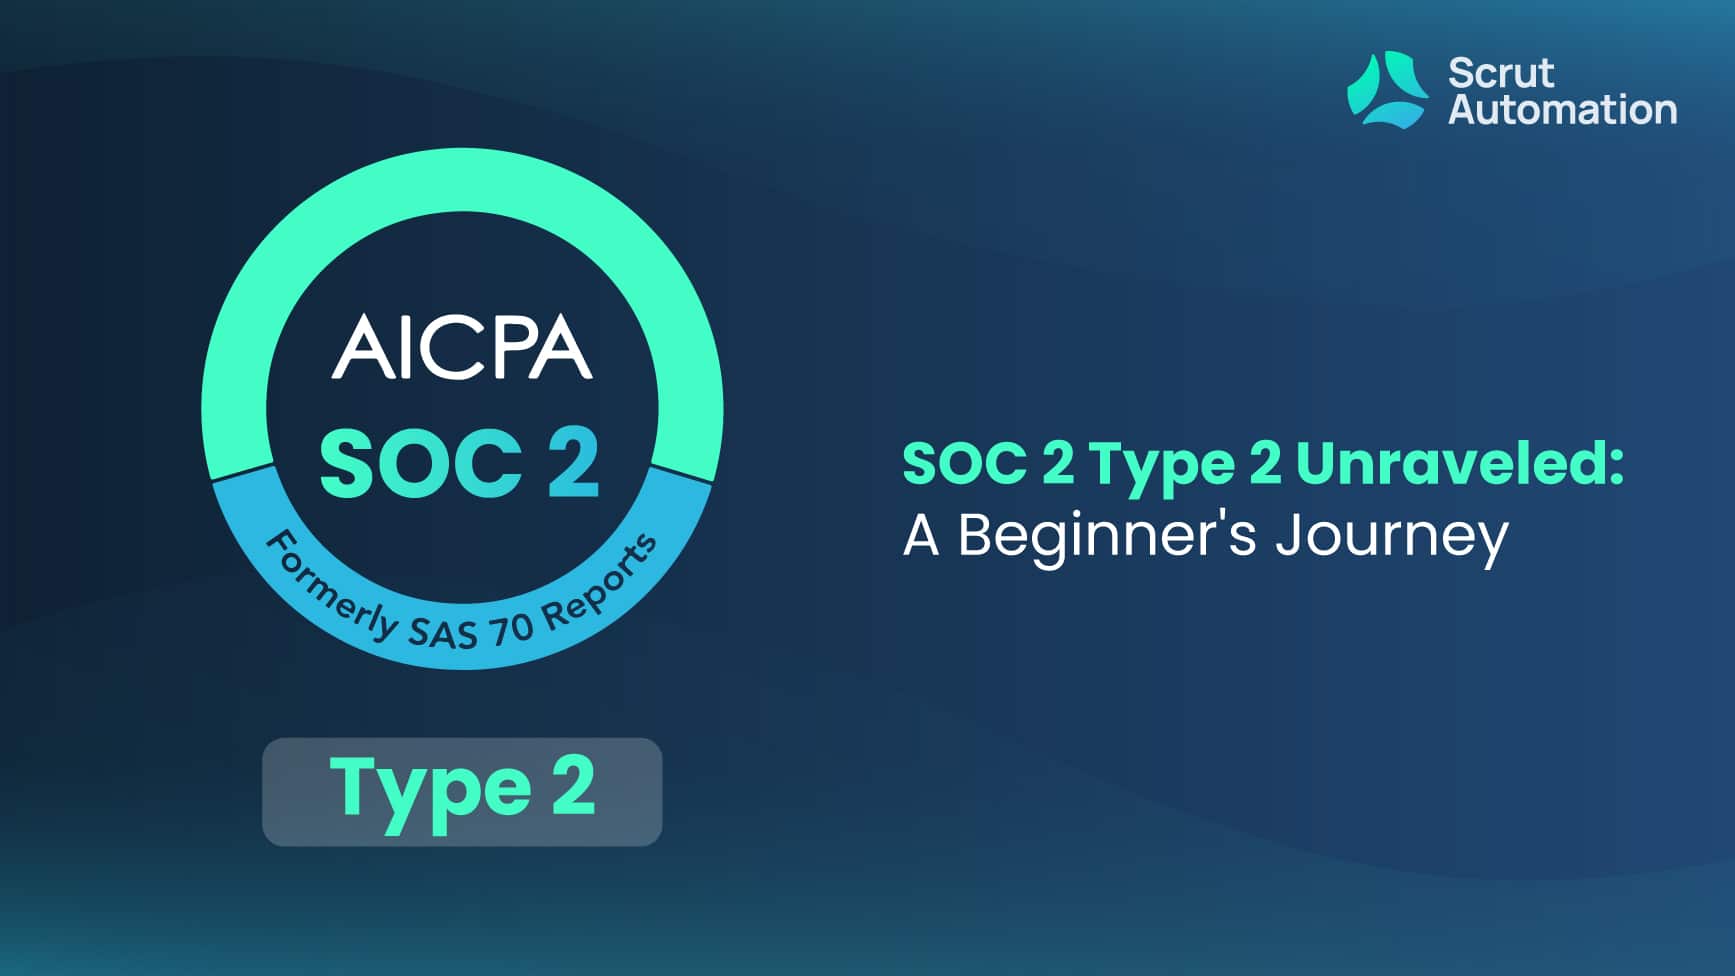 SOC 2 Type 2 guide